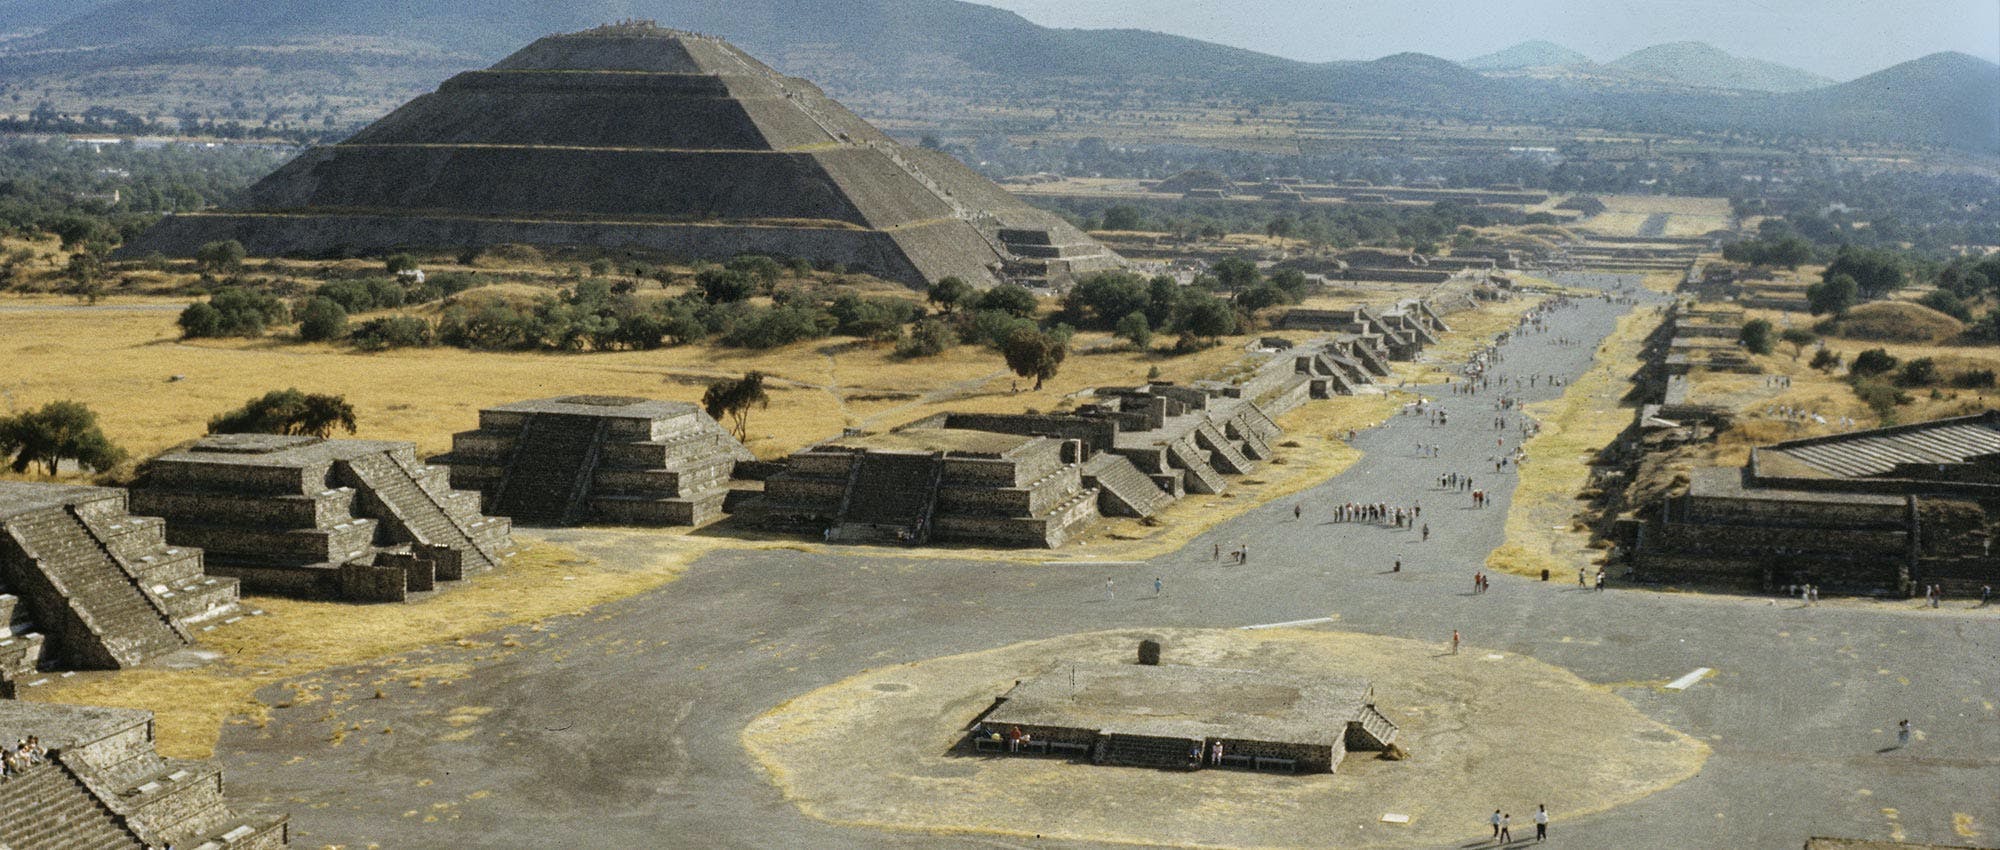 Historisches Zentrum von Mexiko-Stadt, Pyramiden von Teotihuacán und Getränkeverkostung